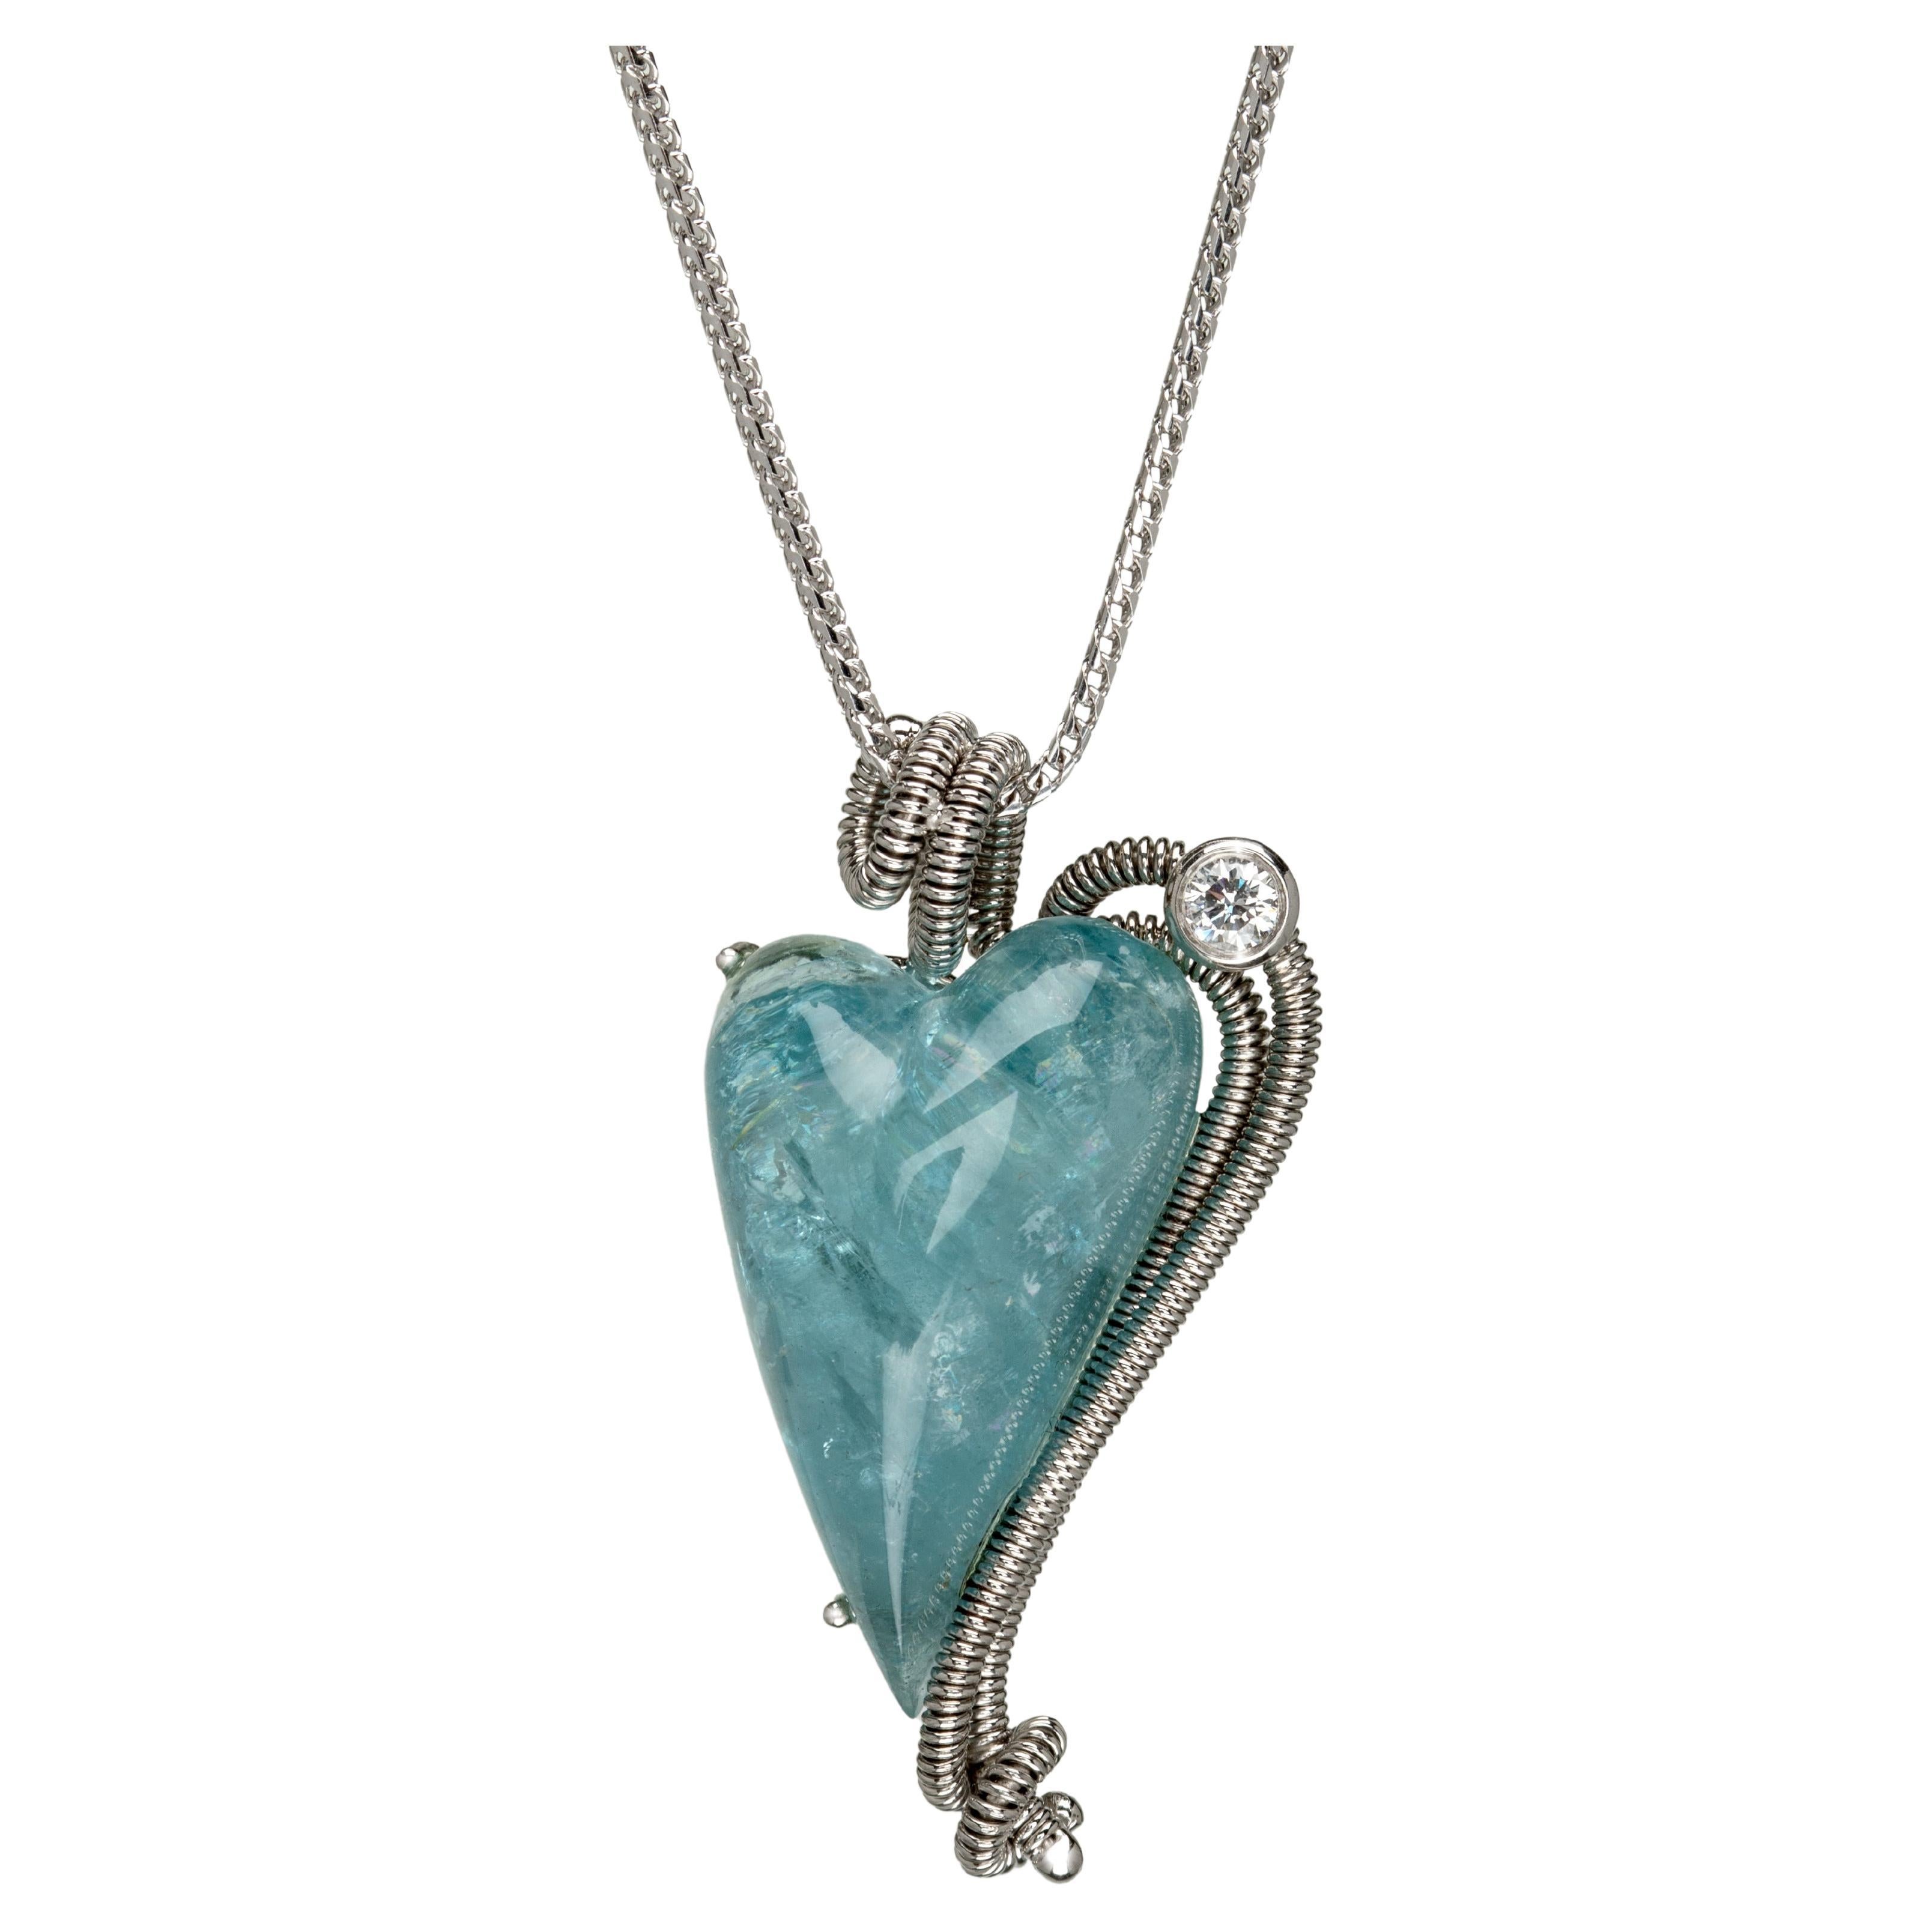 18k White Gold Heart Shaped Aquamarine Pendant with Diamond